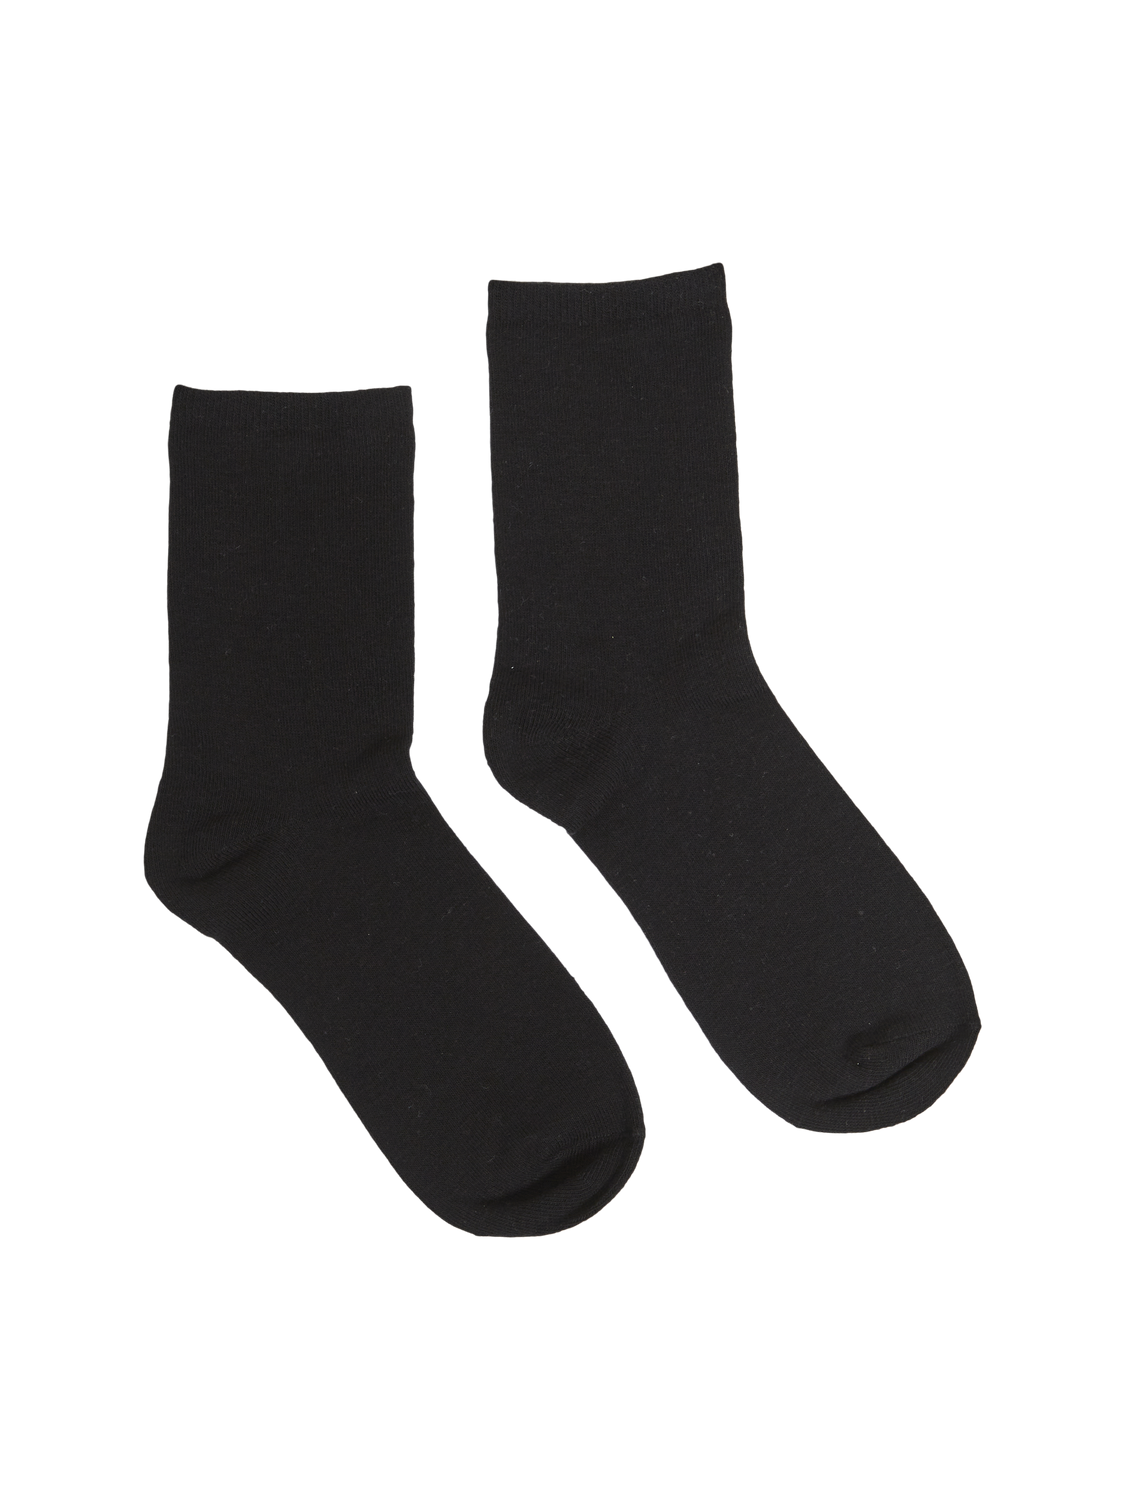 VIVIOLET Socks - Black